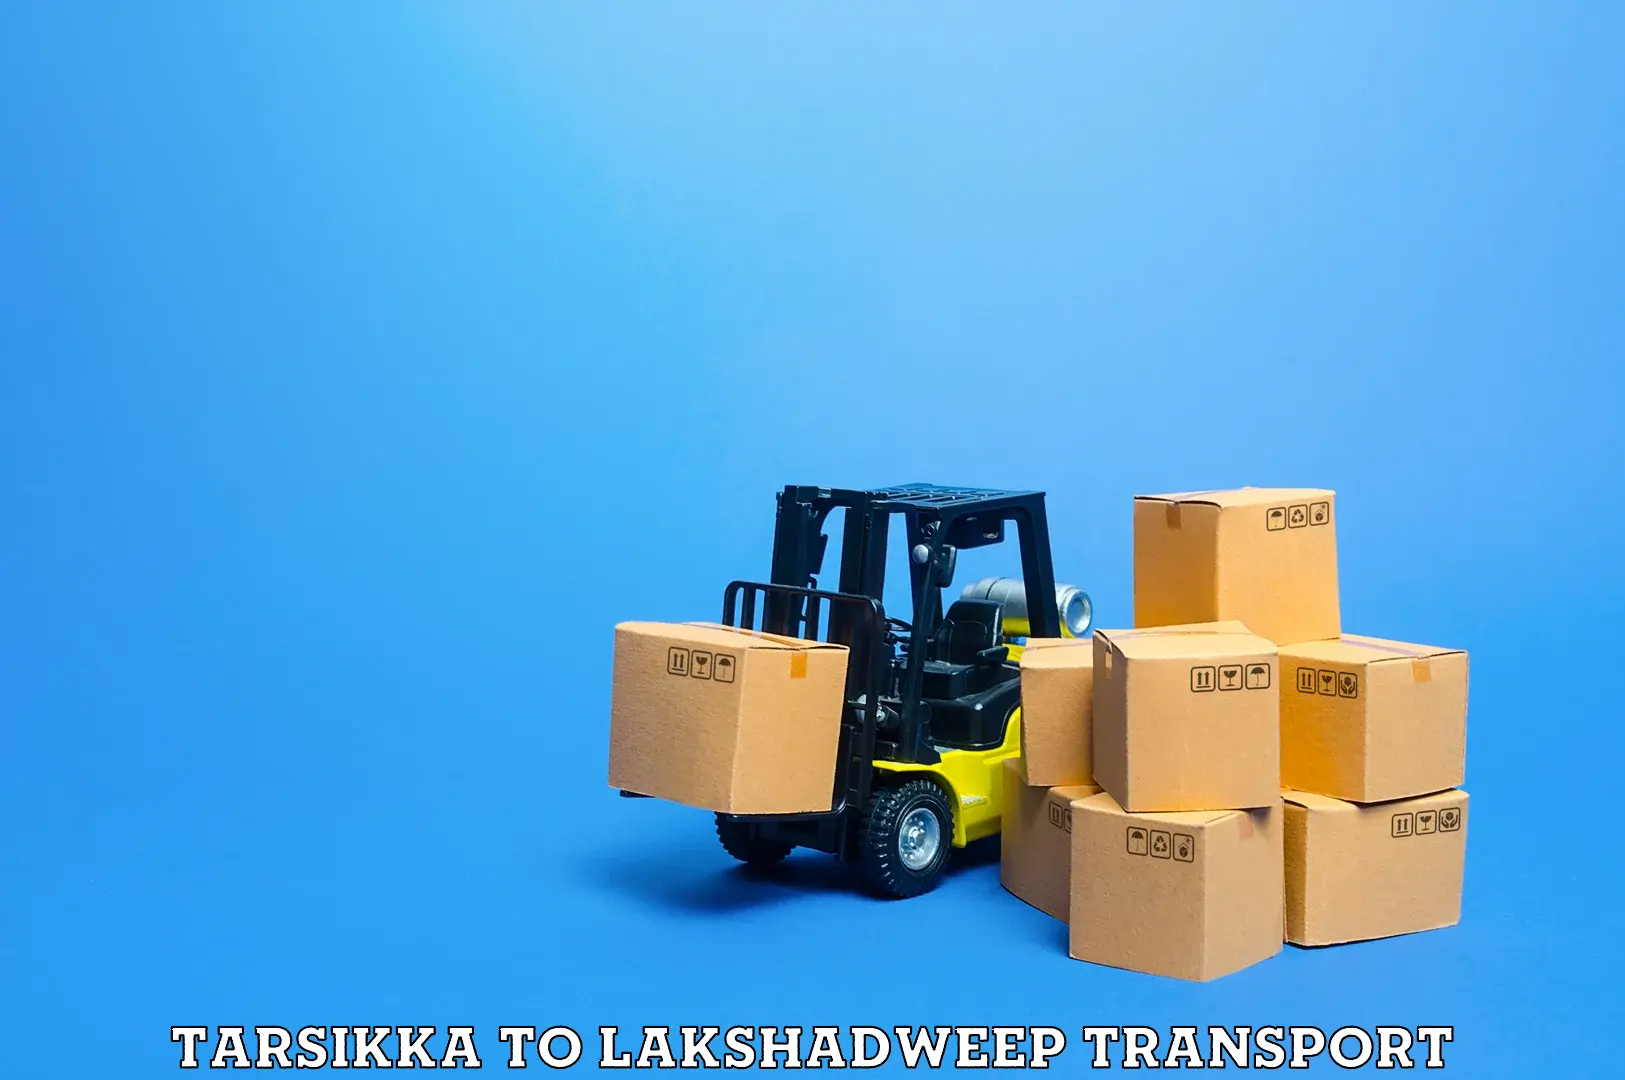 Furniture transport service Tarsikka to Lakshadweep